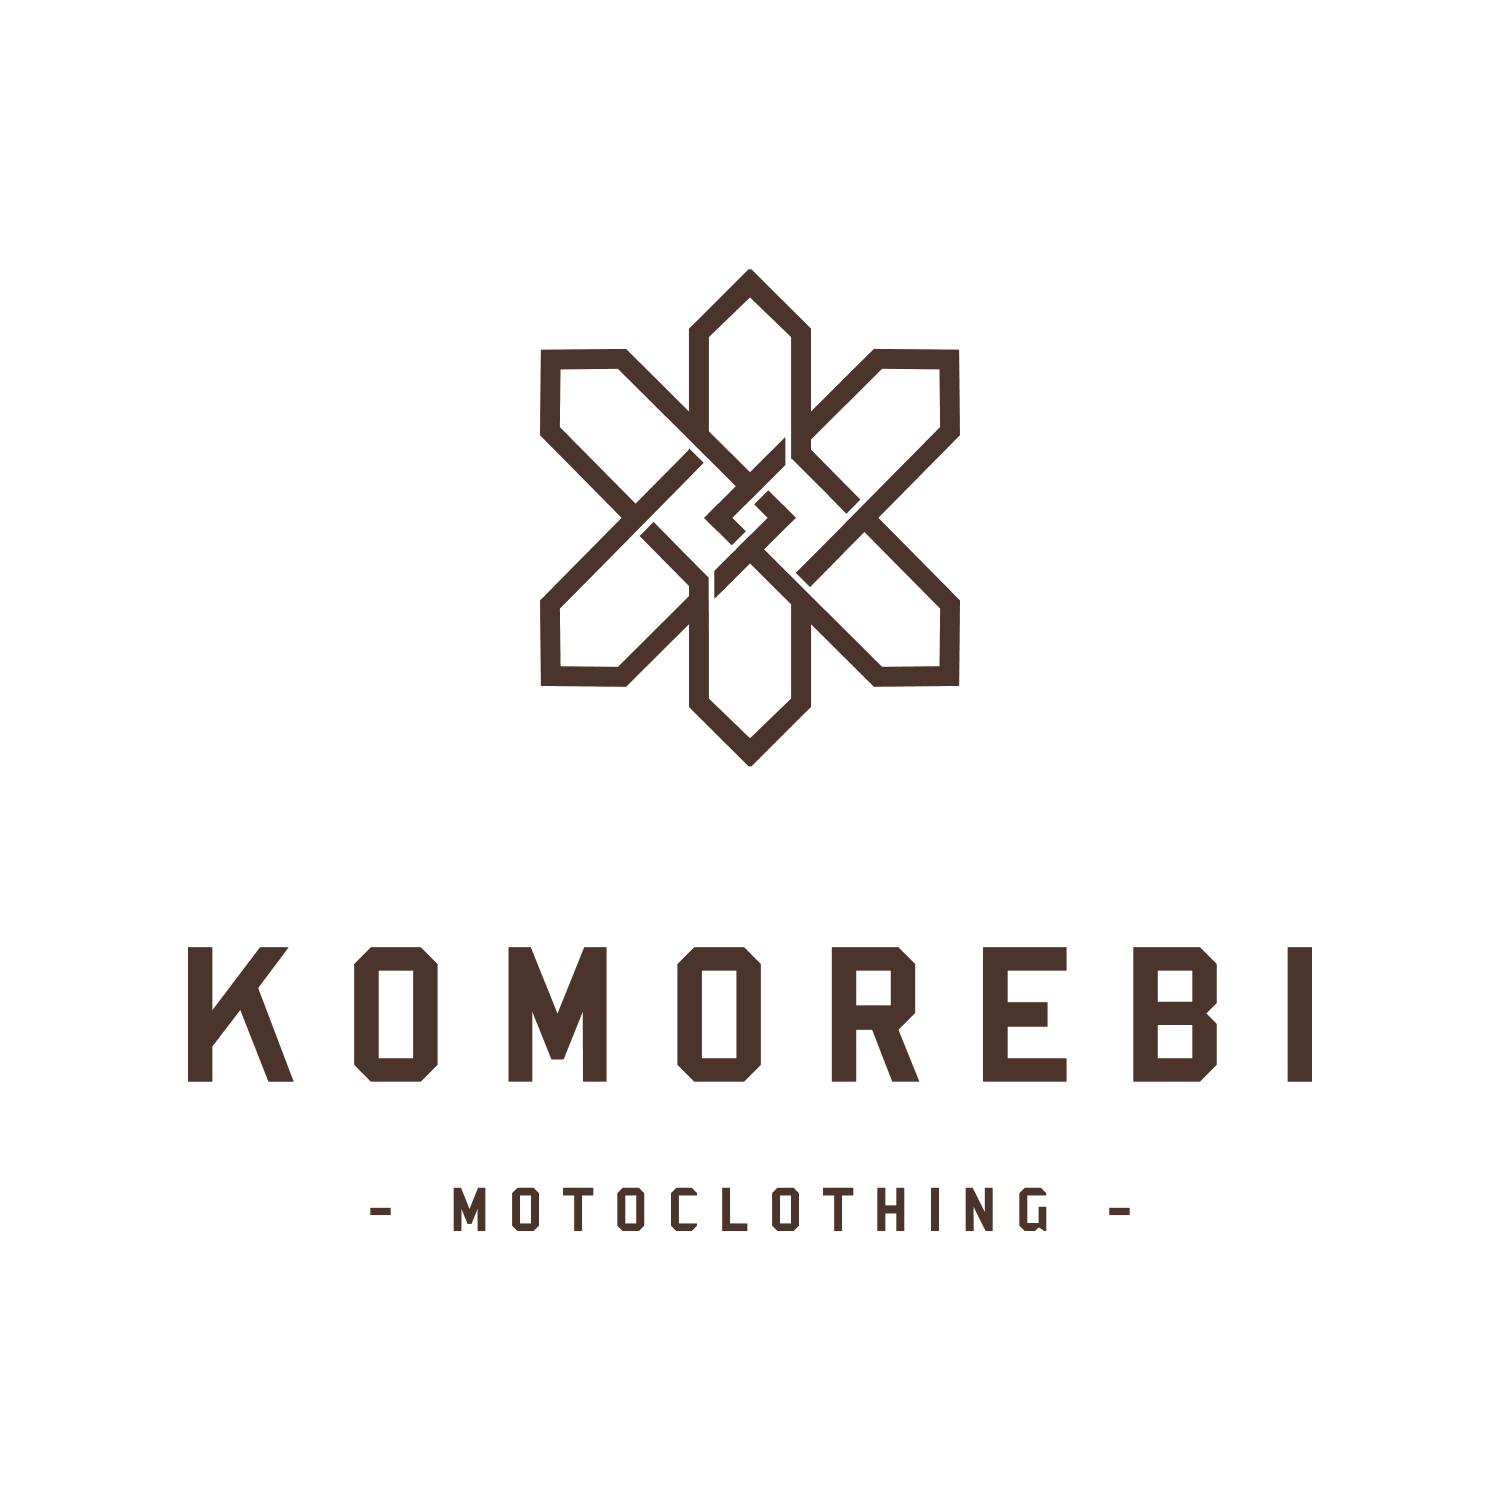 branding move motoclothing narrative design naming 01 komorebi logo 